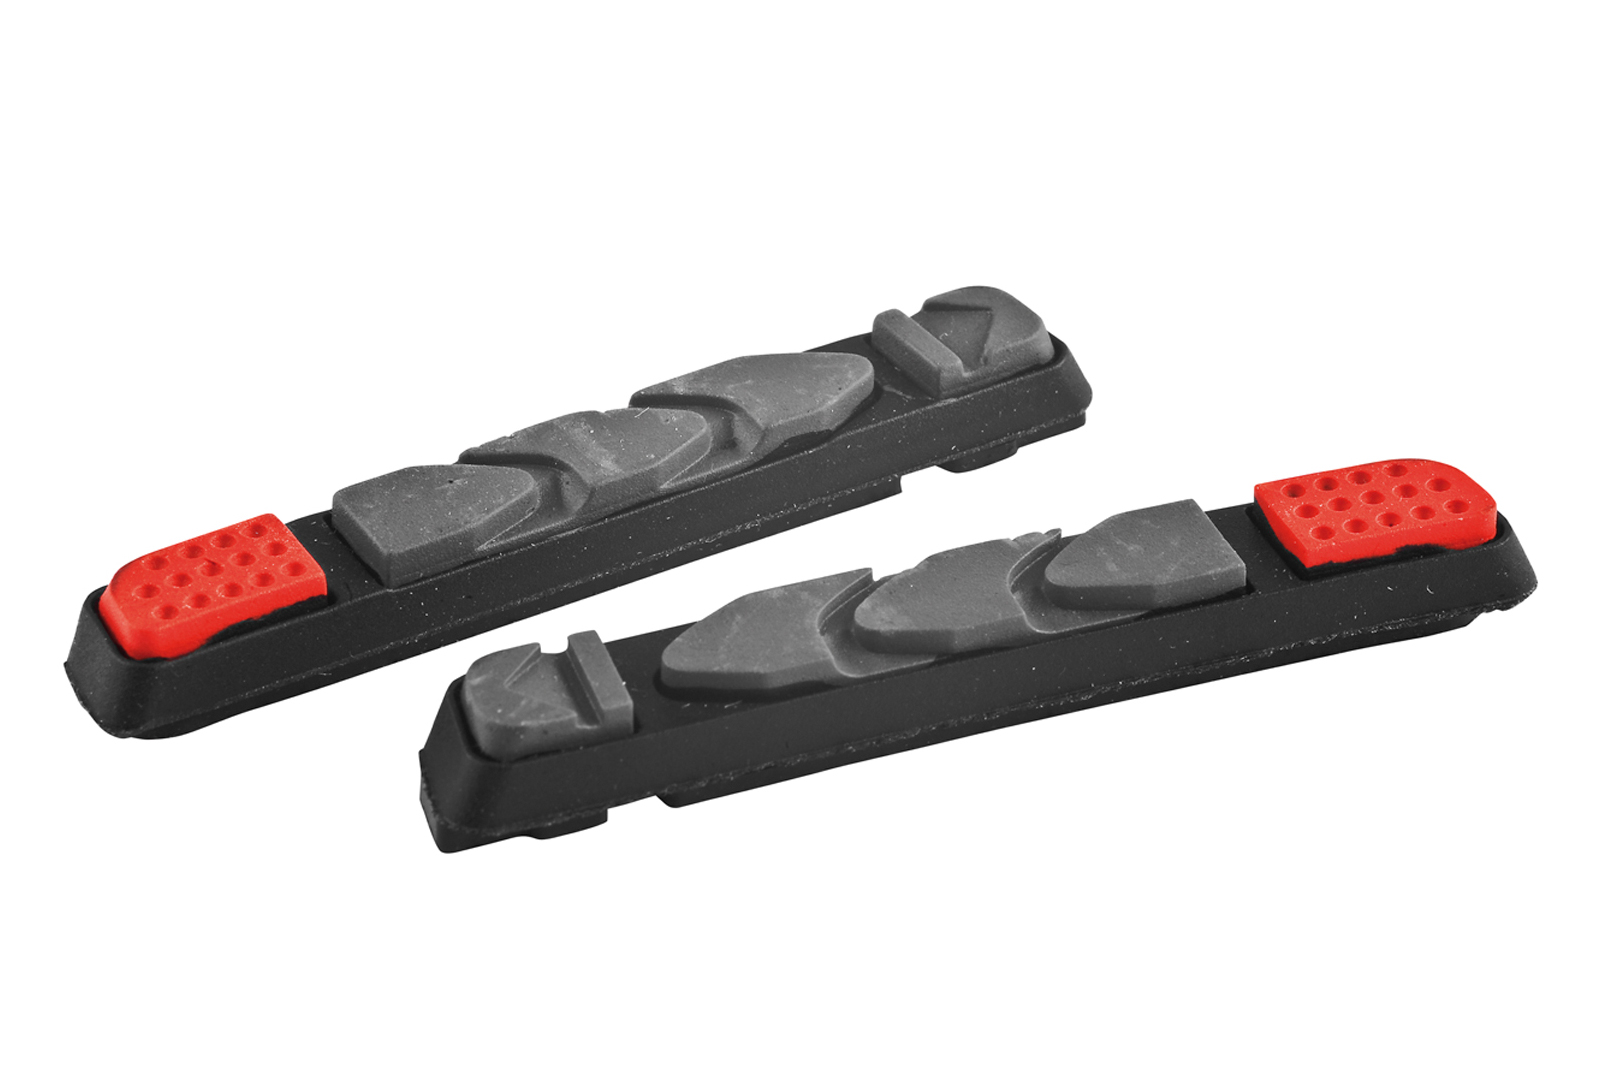 Náhradní brzdové gumičky KLS CONTROLSTOP VR-01 (pár)